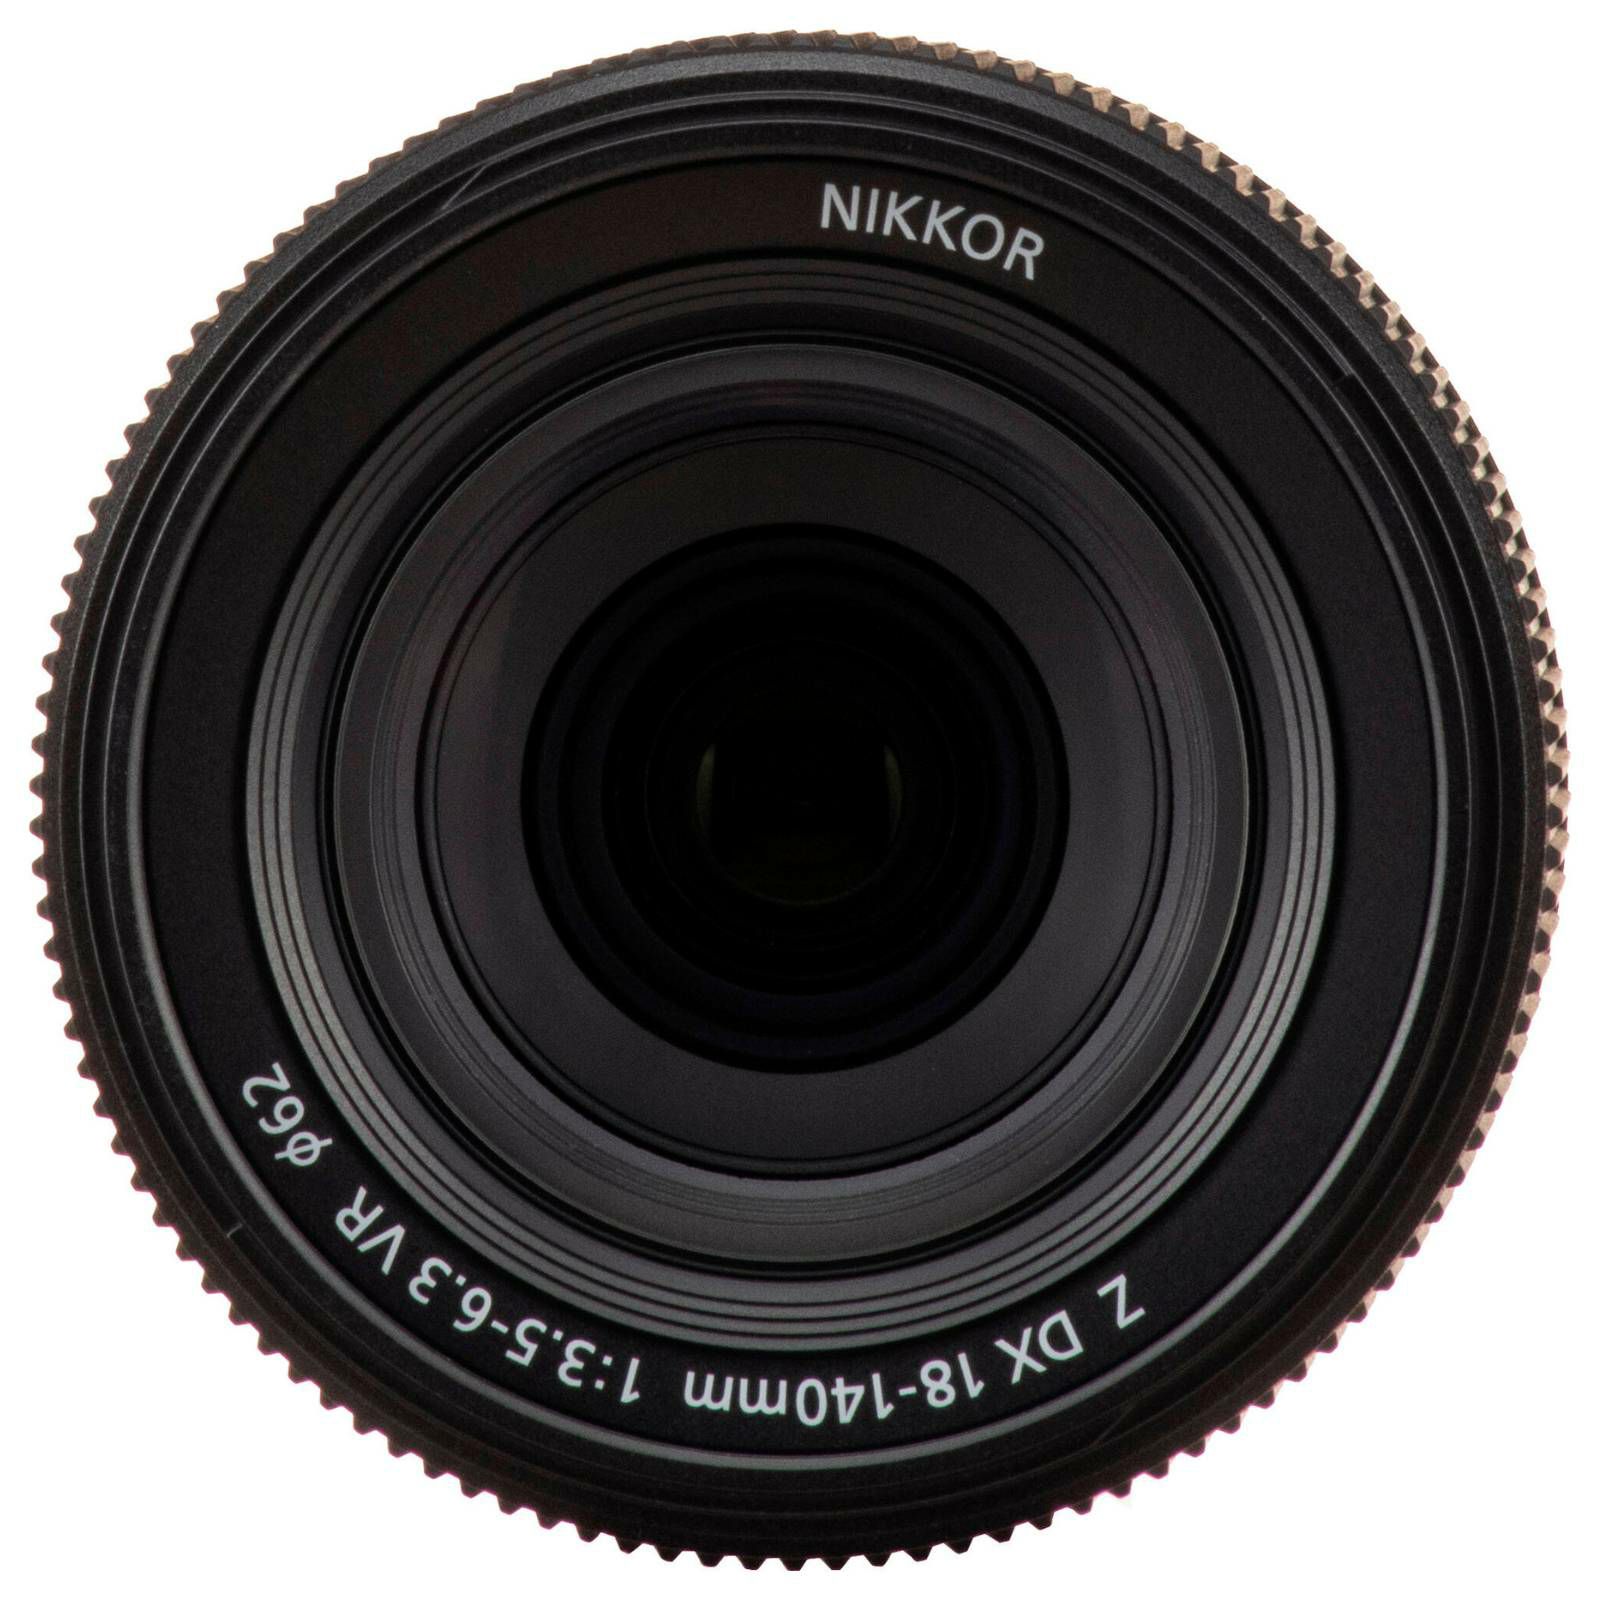 Nikon Z fc + Z DX 18-140mm f/3.5-6.3 VR Black (VOA090KB04)